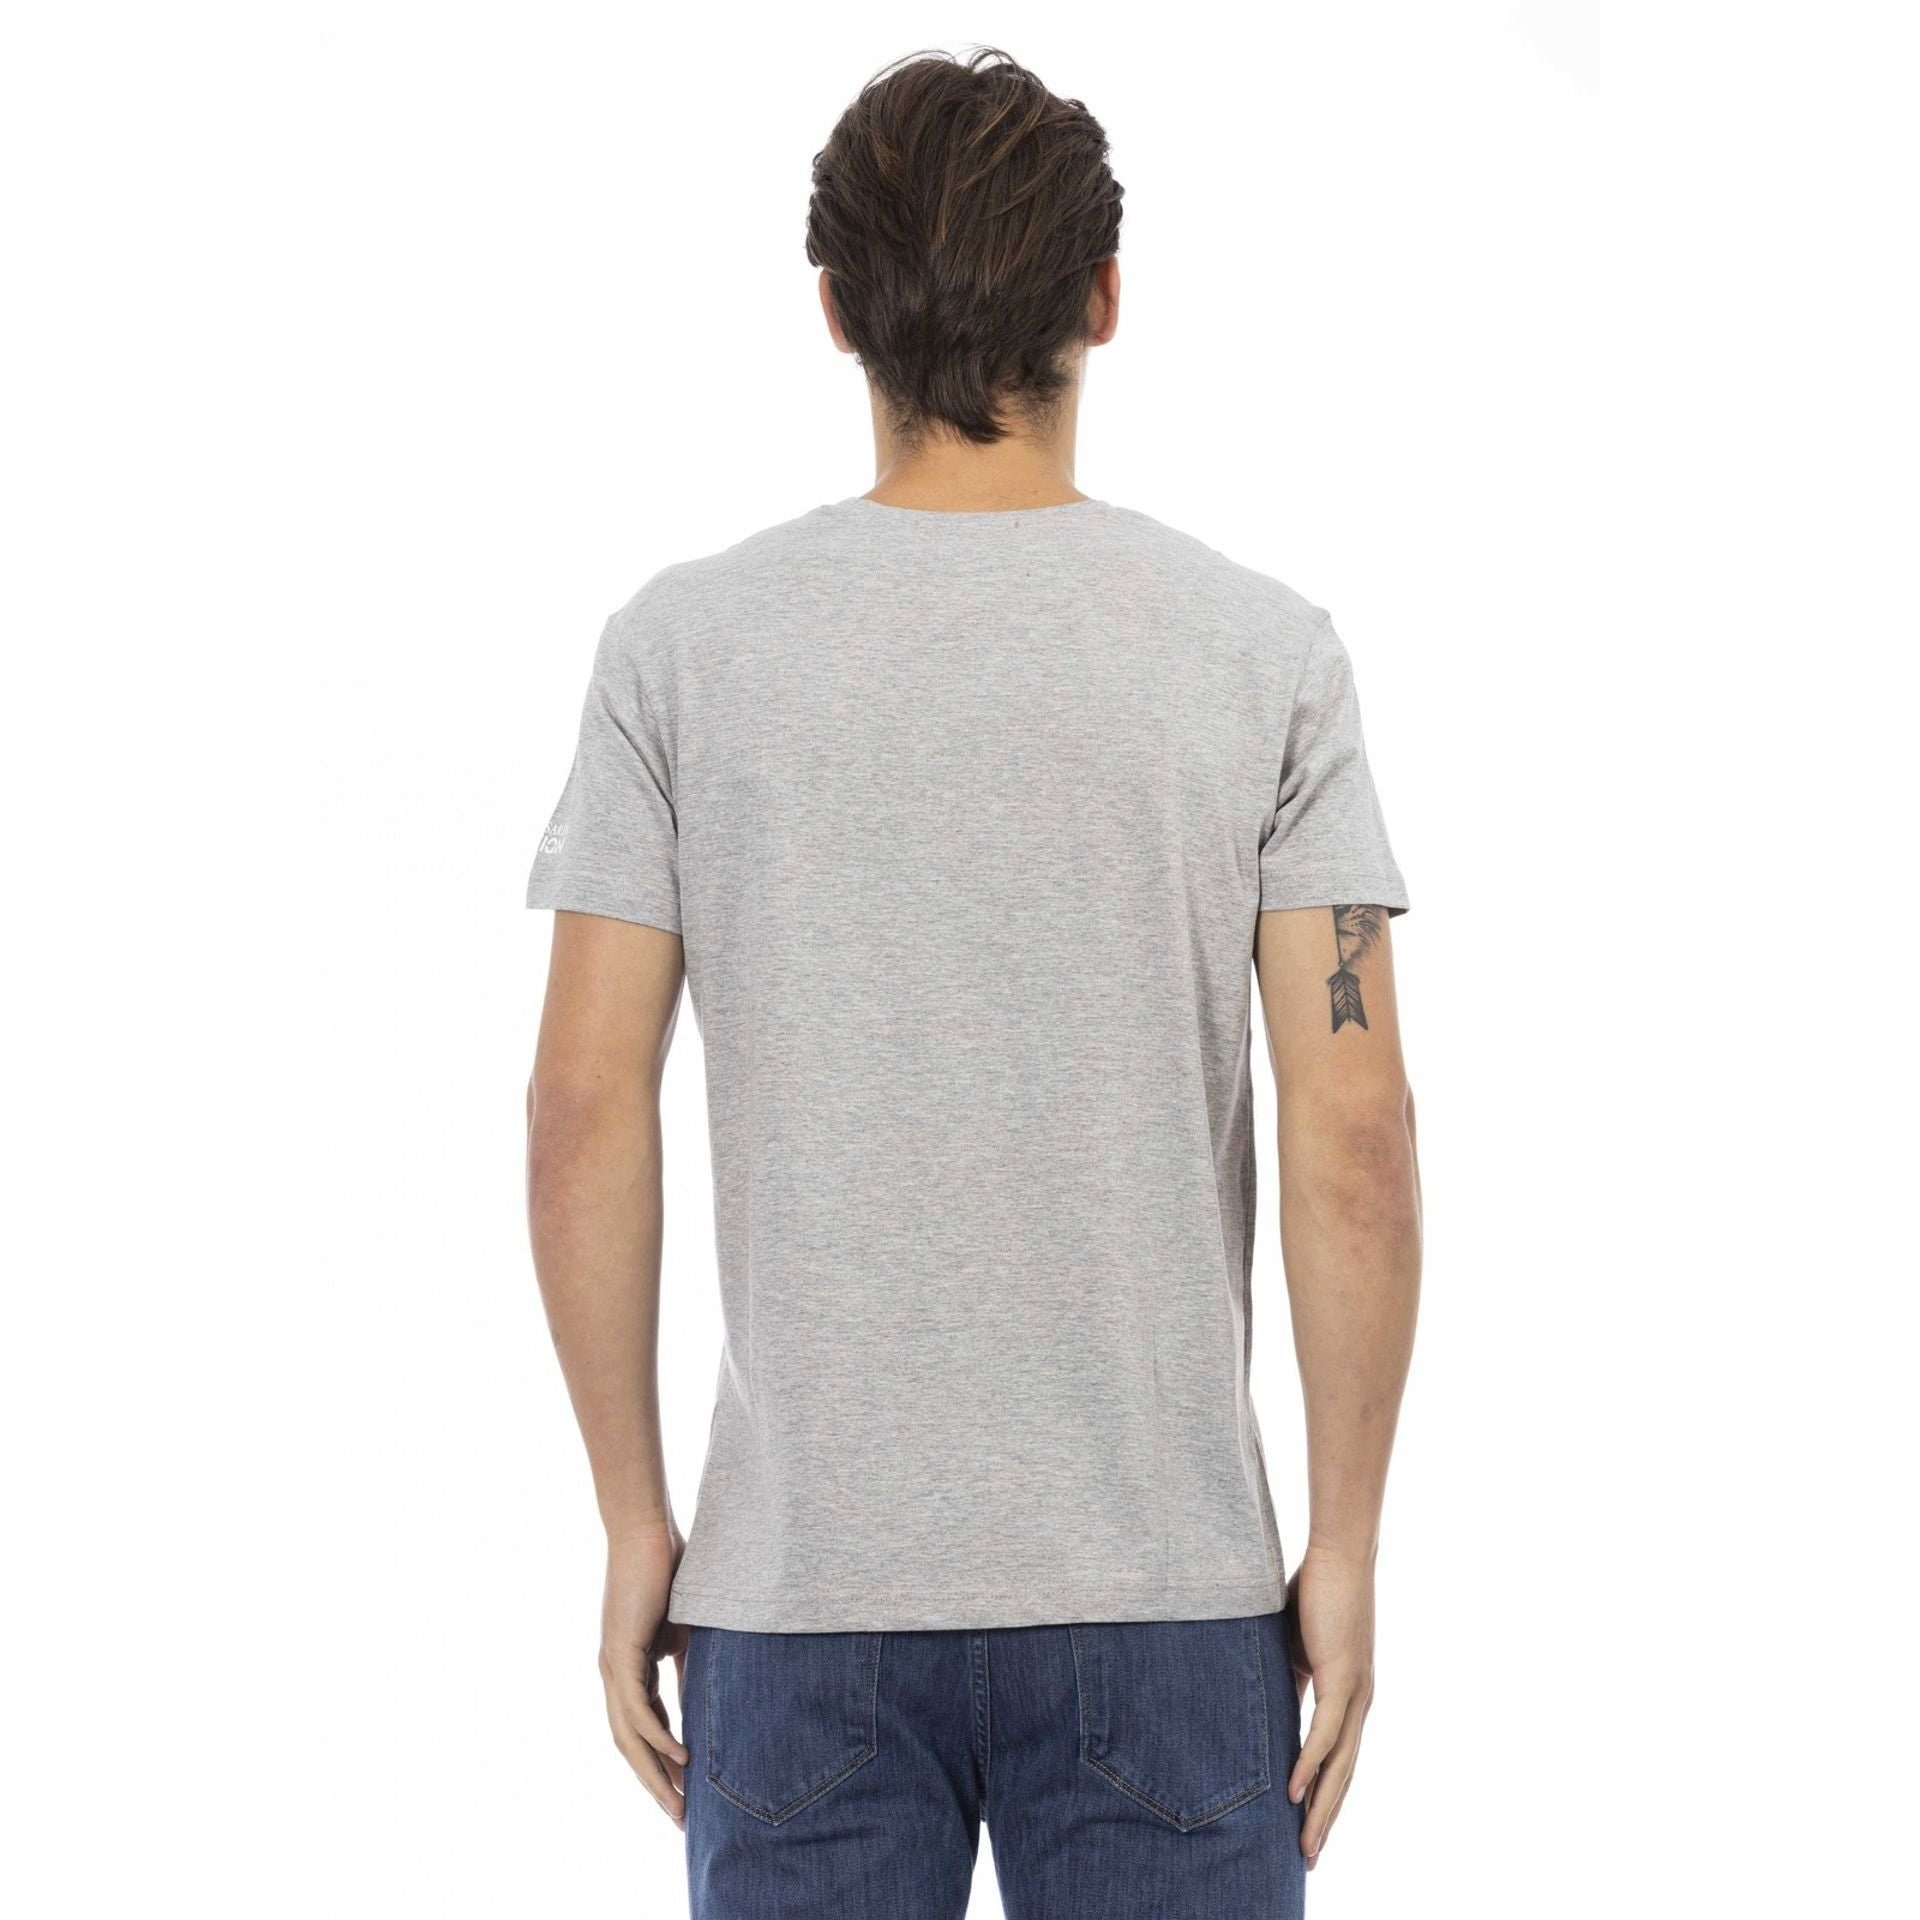 Es das subtile, sich Grau verleiht T-Shirt Action Trussardi Logo-Muster Trussardi Note T-Shirts, eine stilvolle das durch zeichnet aber aus,